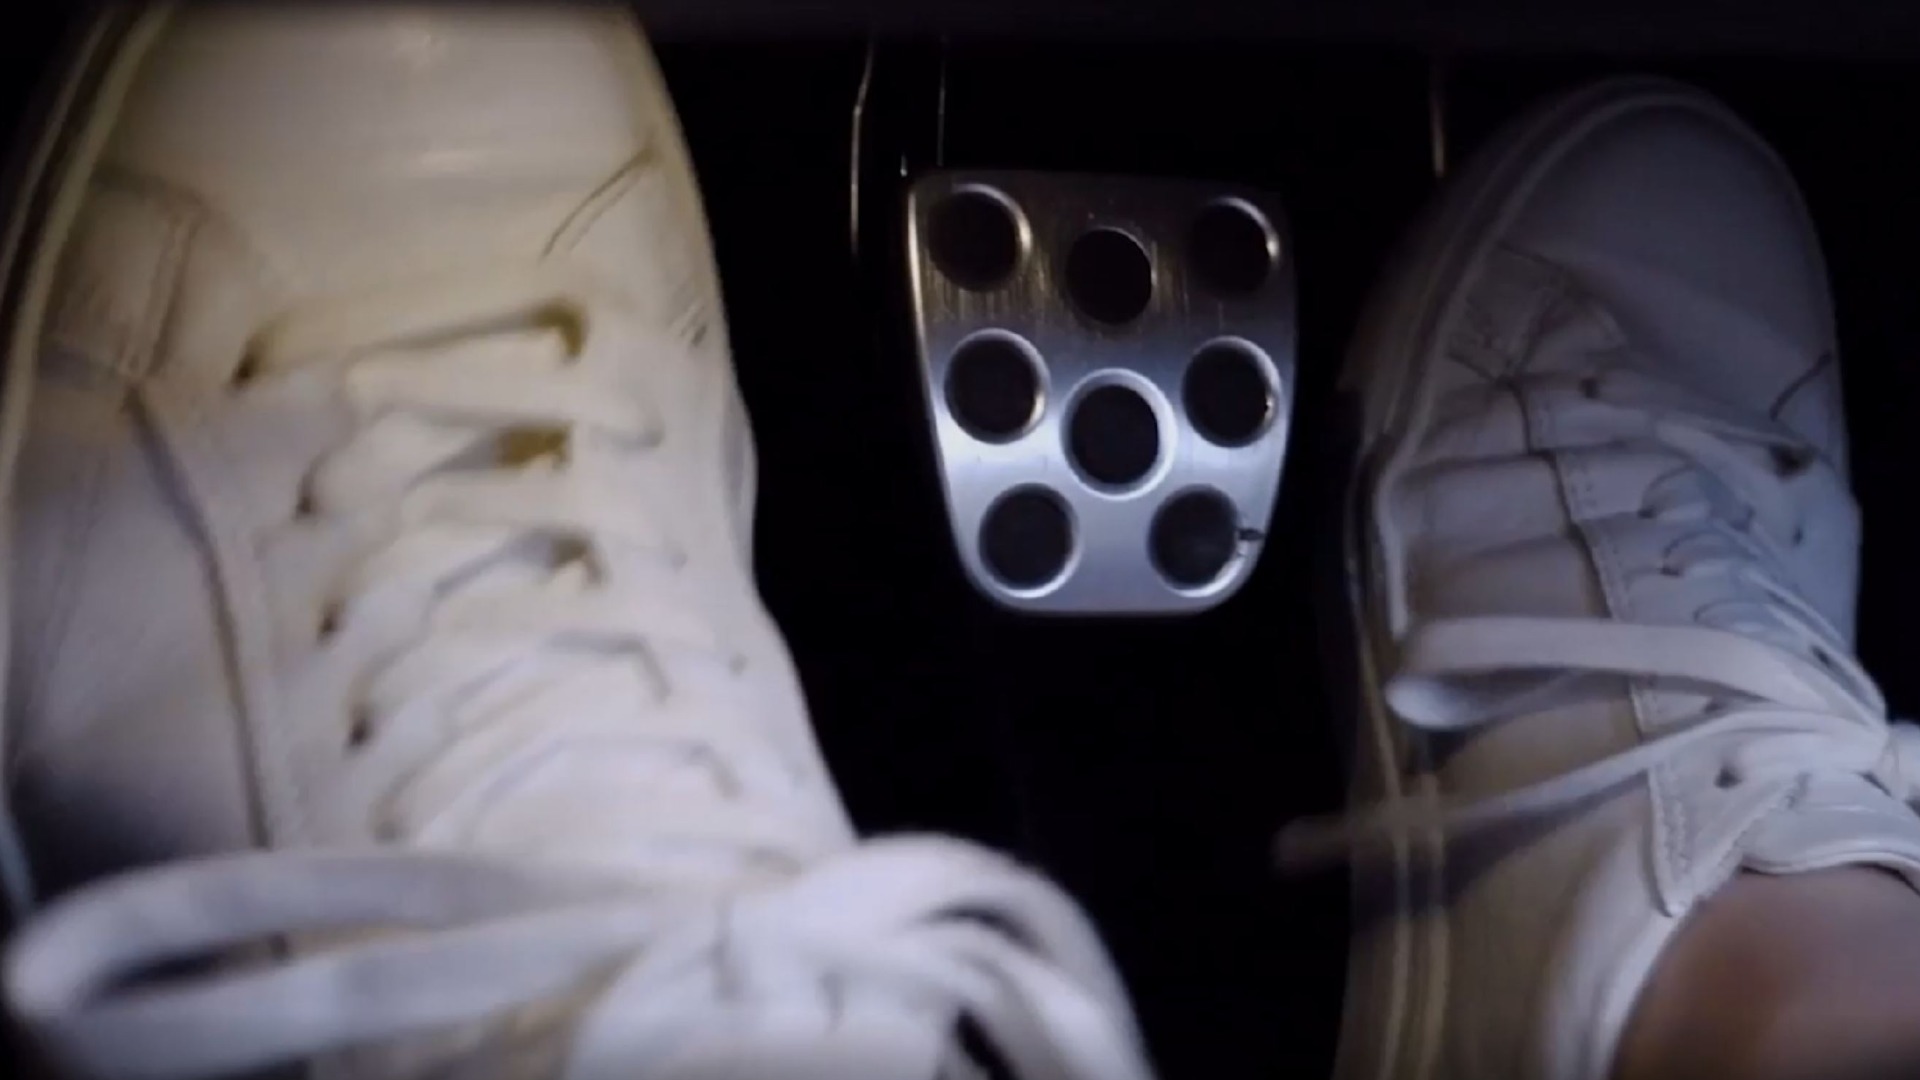 Fra presentasjonsvideoen som viser at bilen har tre pedaler.